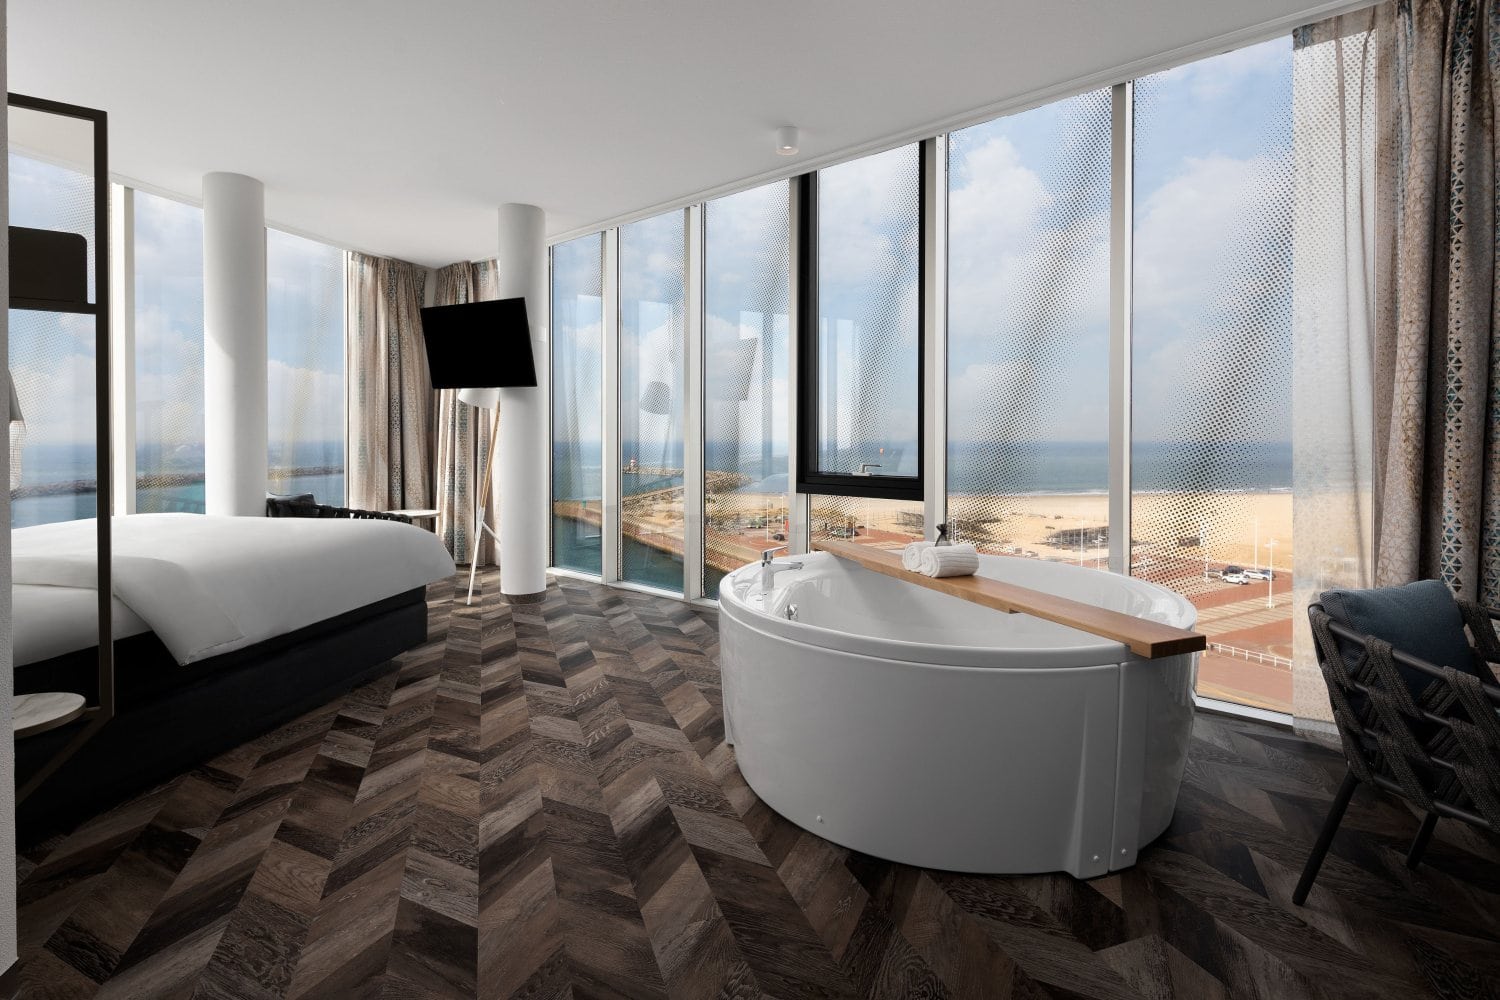 Inntel Hotels Den Haag Marina Beach - Wellness Sea View kamer - hotelkamer met bubbelbad uitzicht